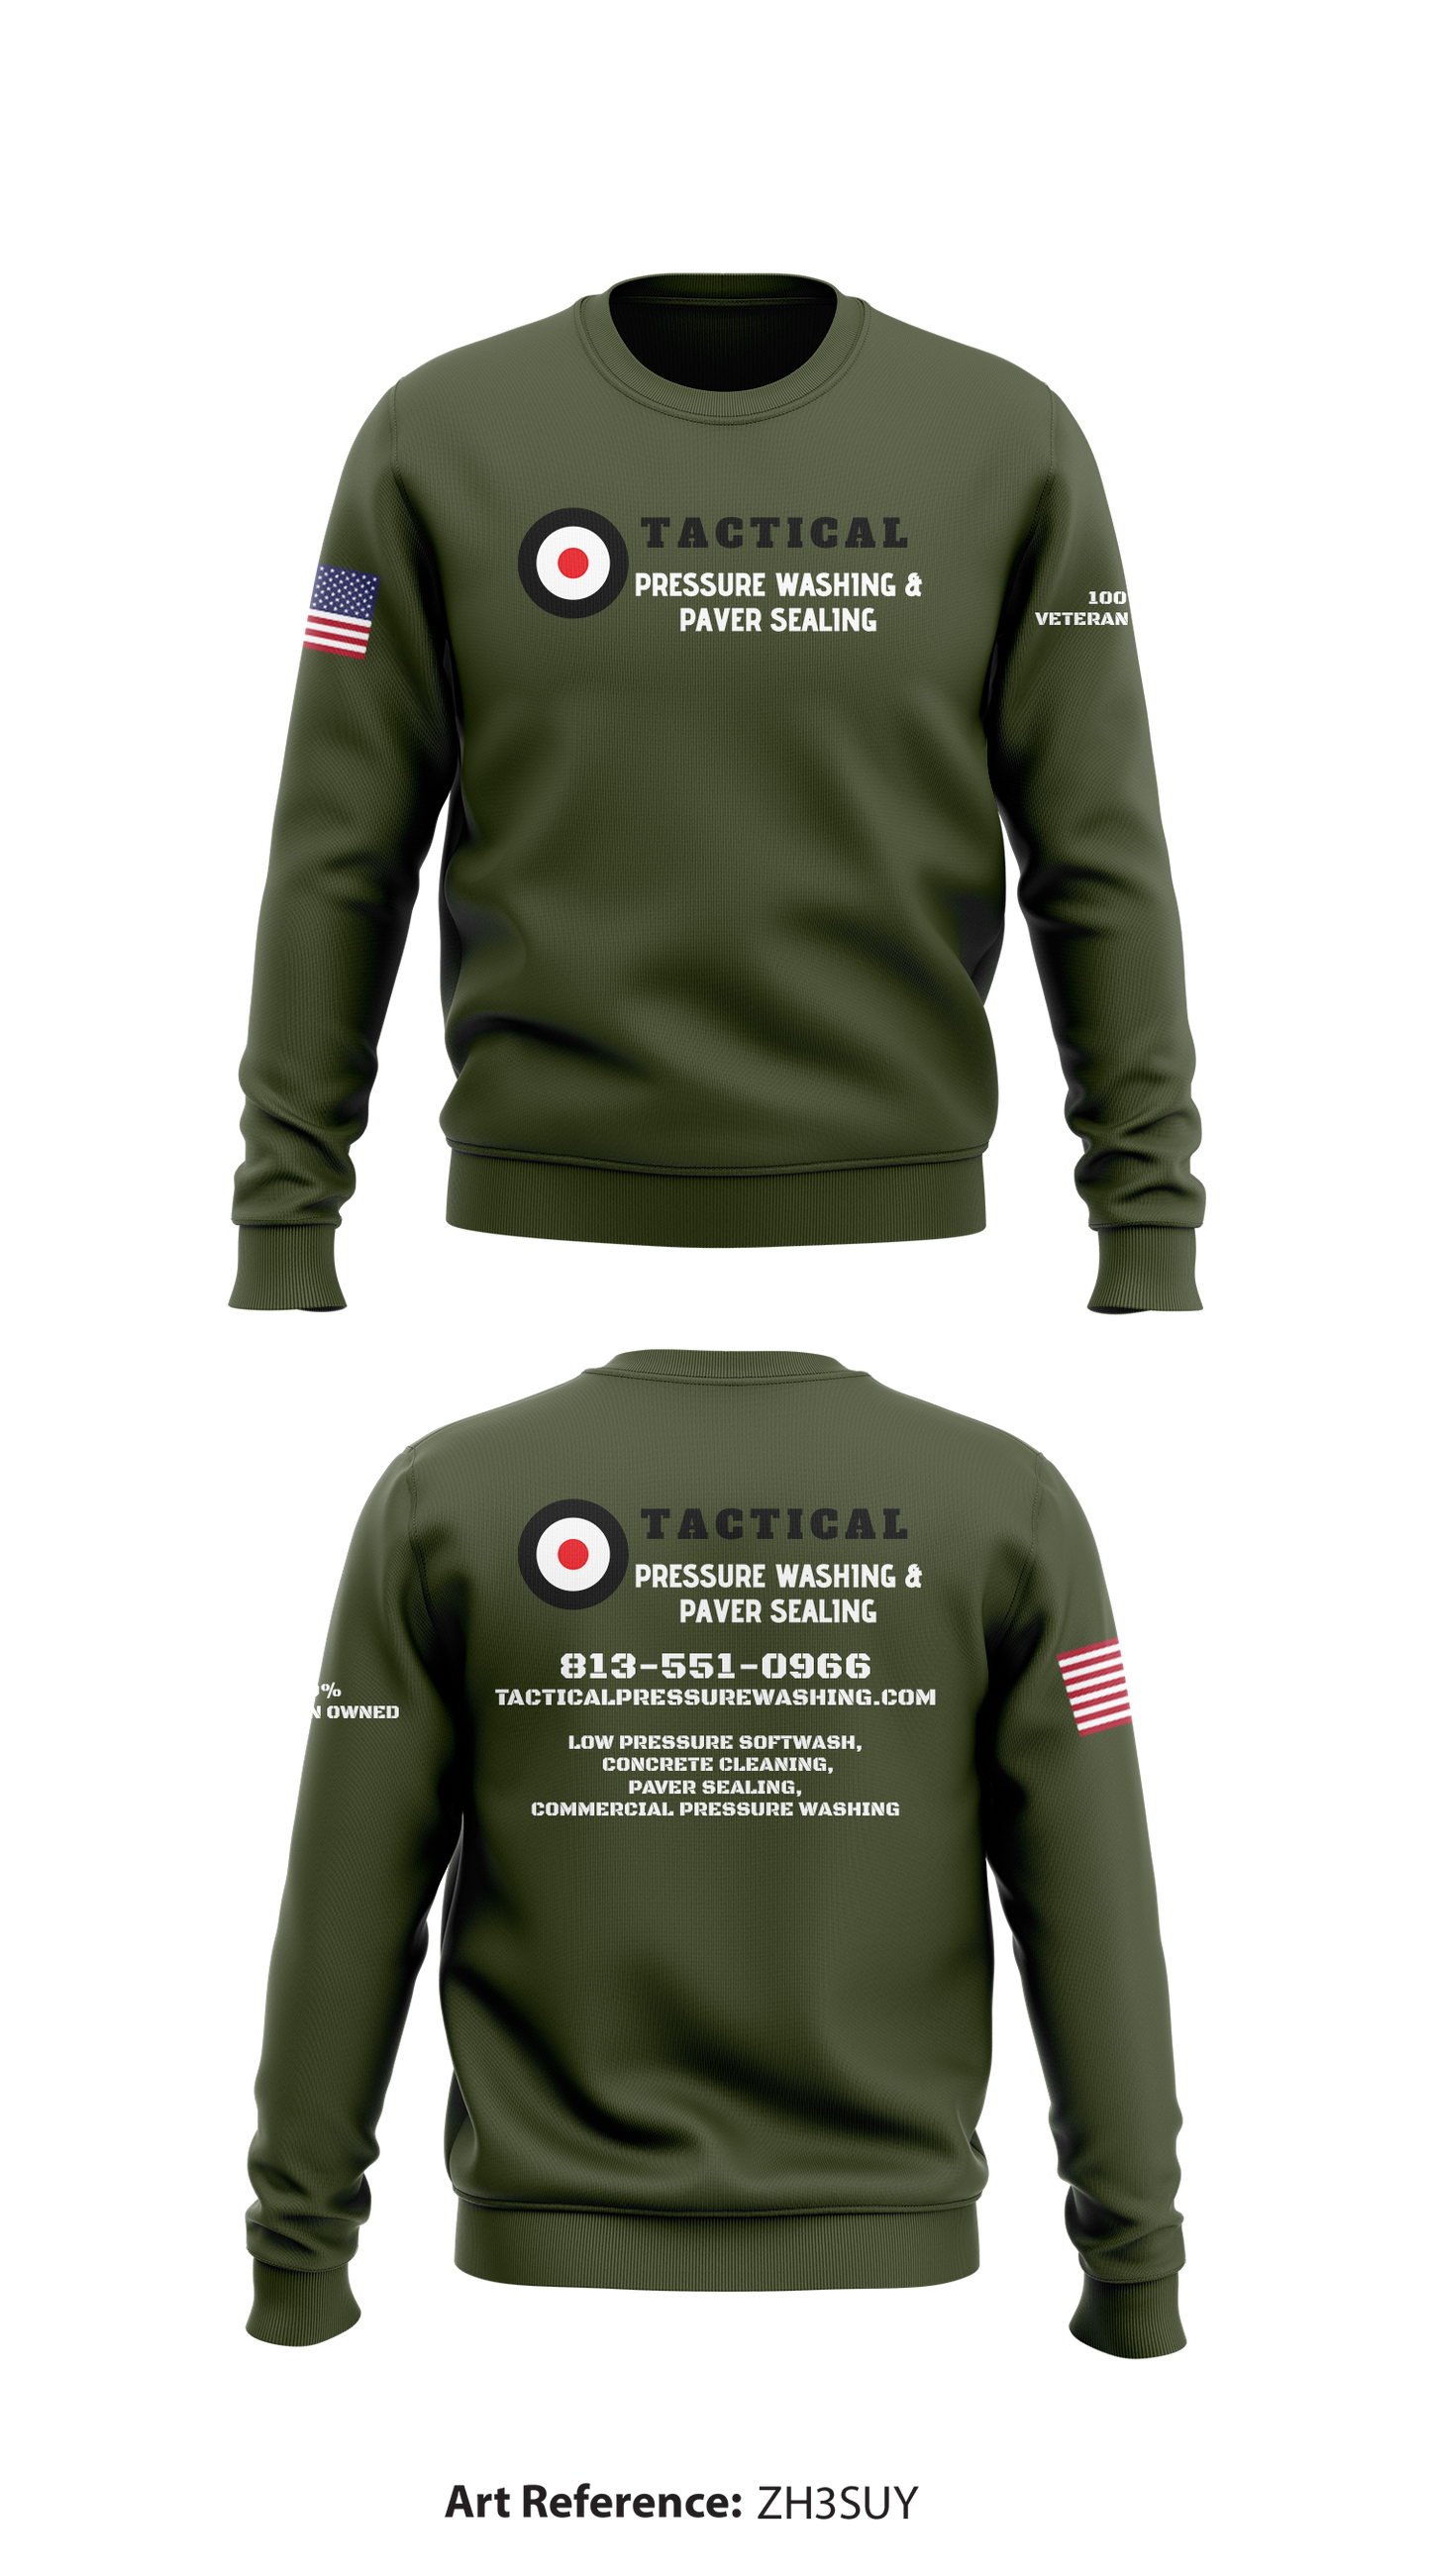 Tactical Pressure Washing & Paver Sealing Core Men's Crewneck Performance Sweatshirt - PTkQAN